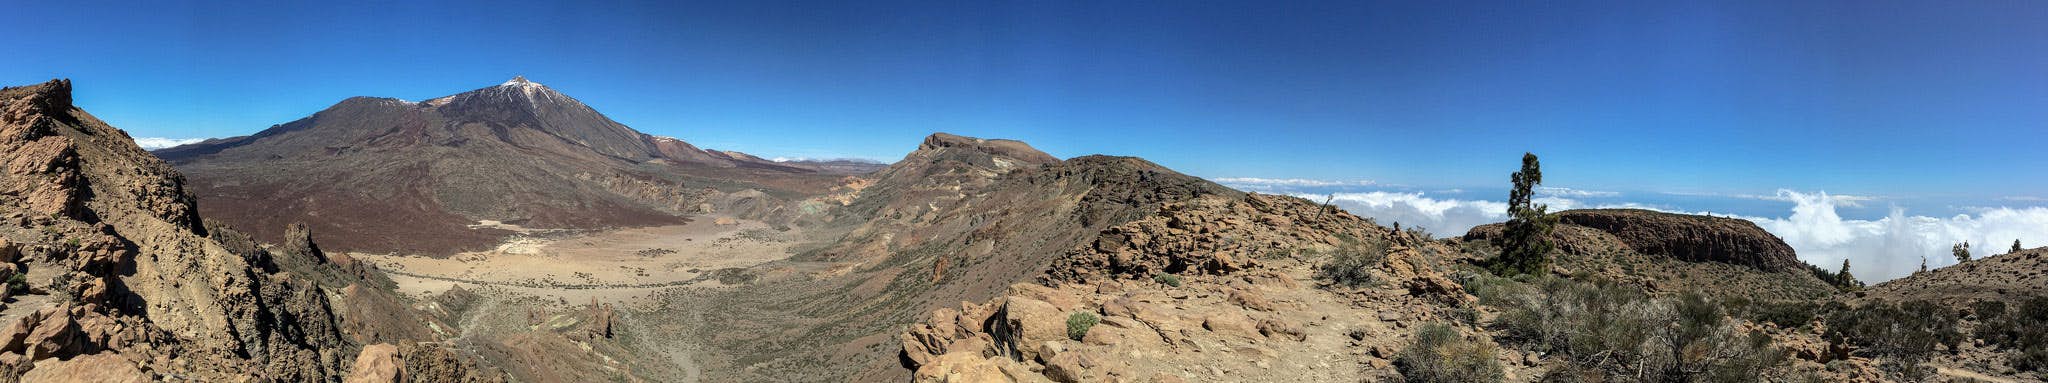 Panorambild vom Teide, der Caldera und den umliegenden Bergen